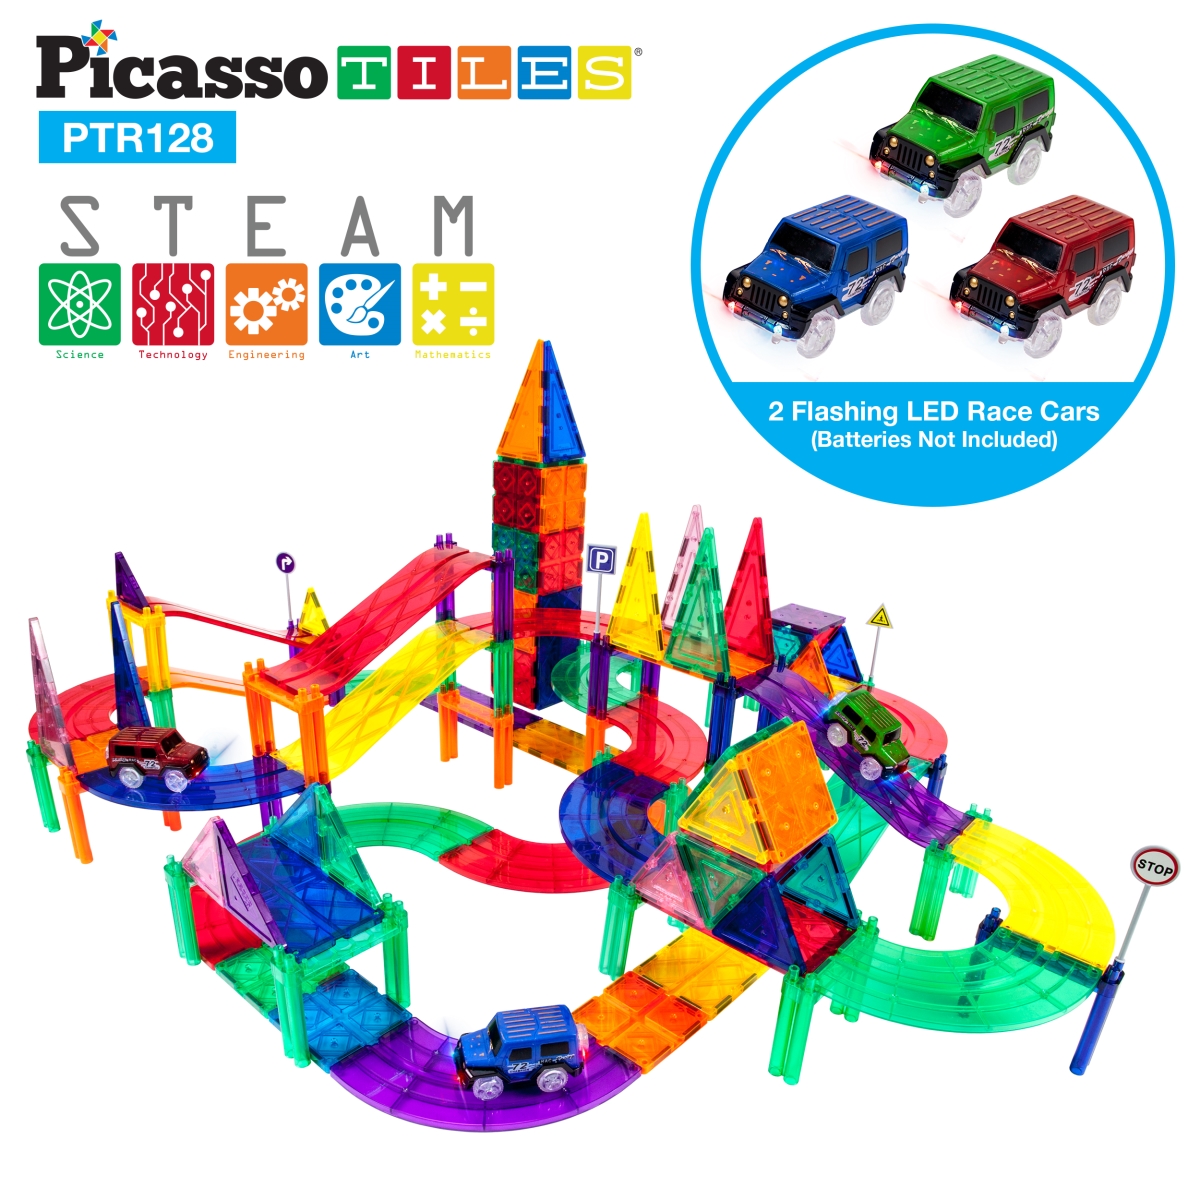 PTR128 Race Track Building Blocks Construction Toys - 128 Piece -  Picasso Tiles